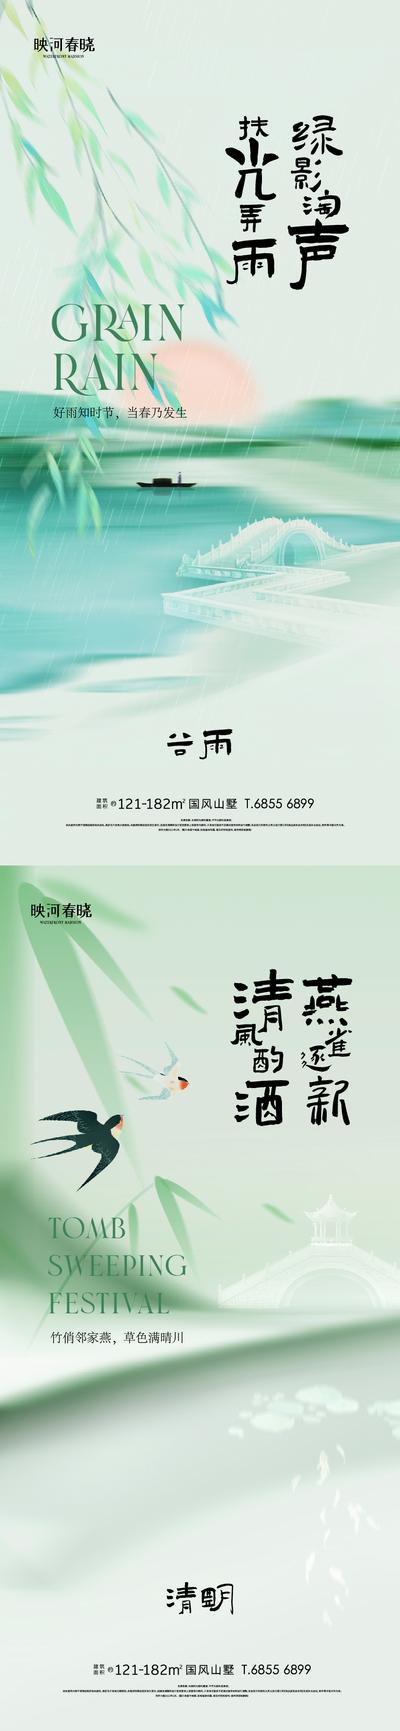 【南门网】海报 中国传统节日 清明 二十四节气 谷雨 清新 插画 下雨 燕子 柳叶